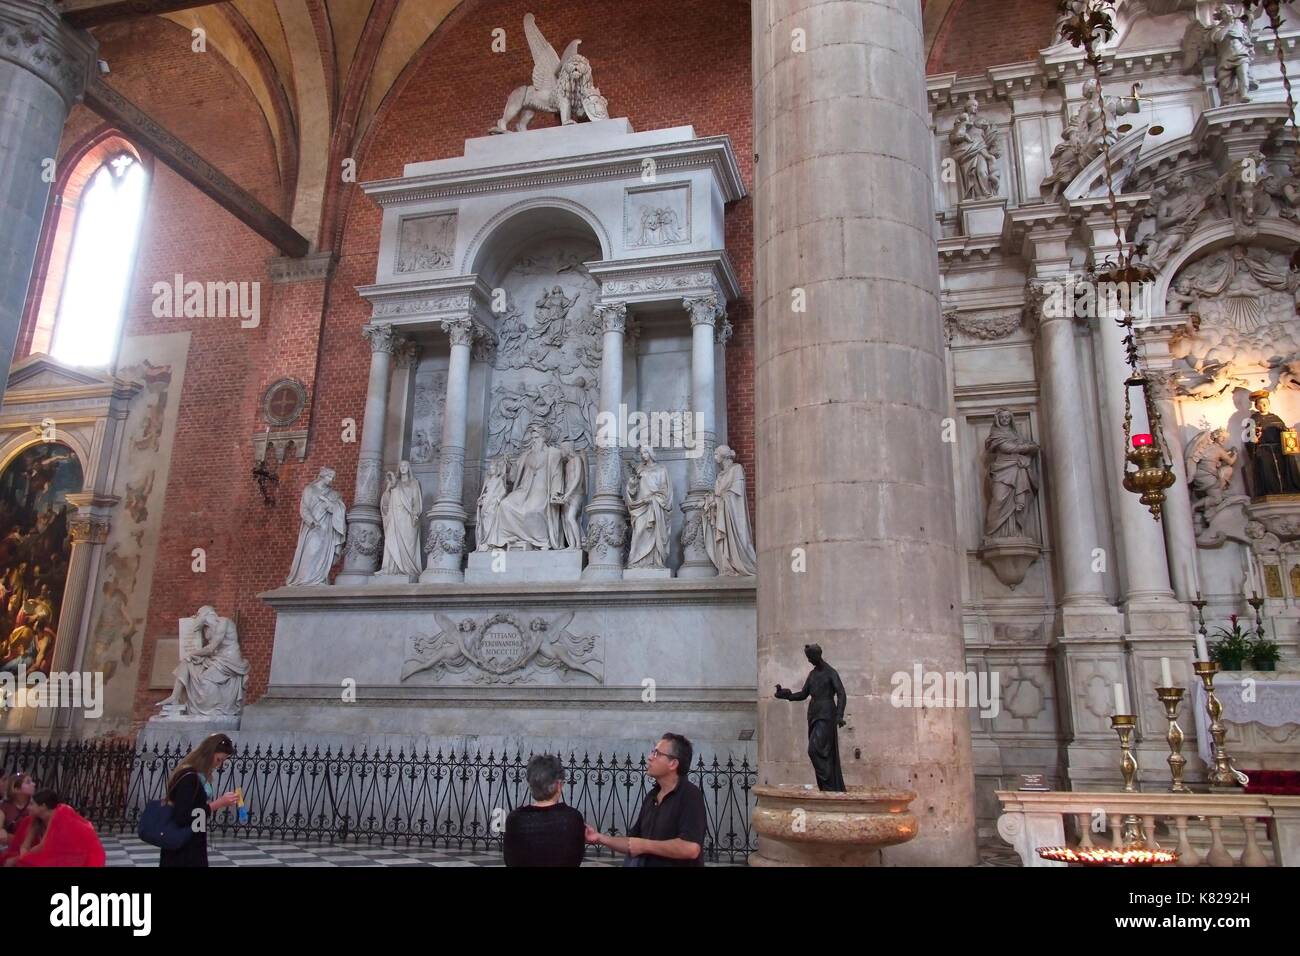 Venise Vénétie Italie. Basilique Santa Maria Gloriosa dei Frari, connu par le Vénitien Frari. L'intérieurapt Monumento a Tiziano, Monument de Titien. Banque D'Images